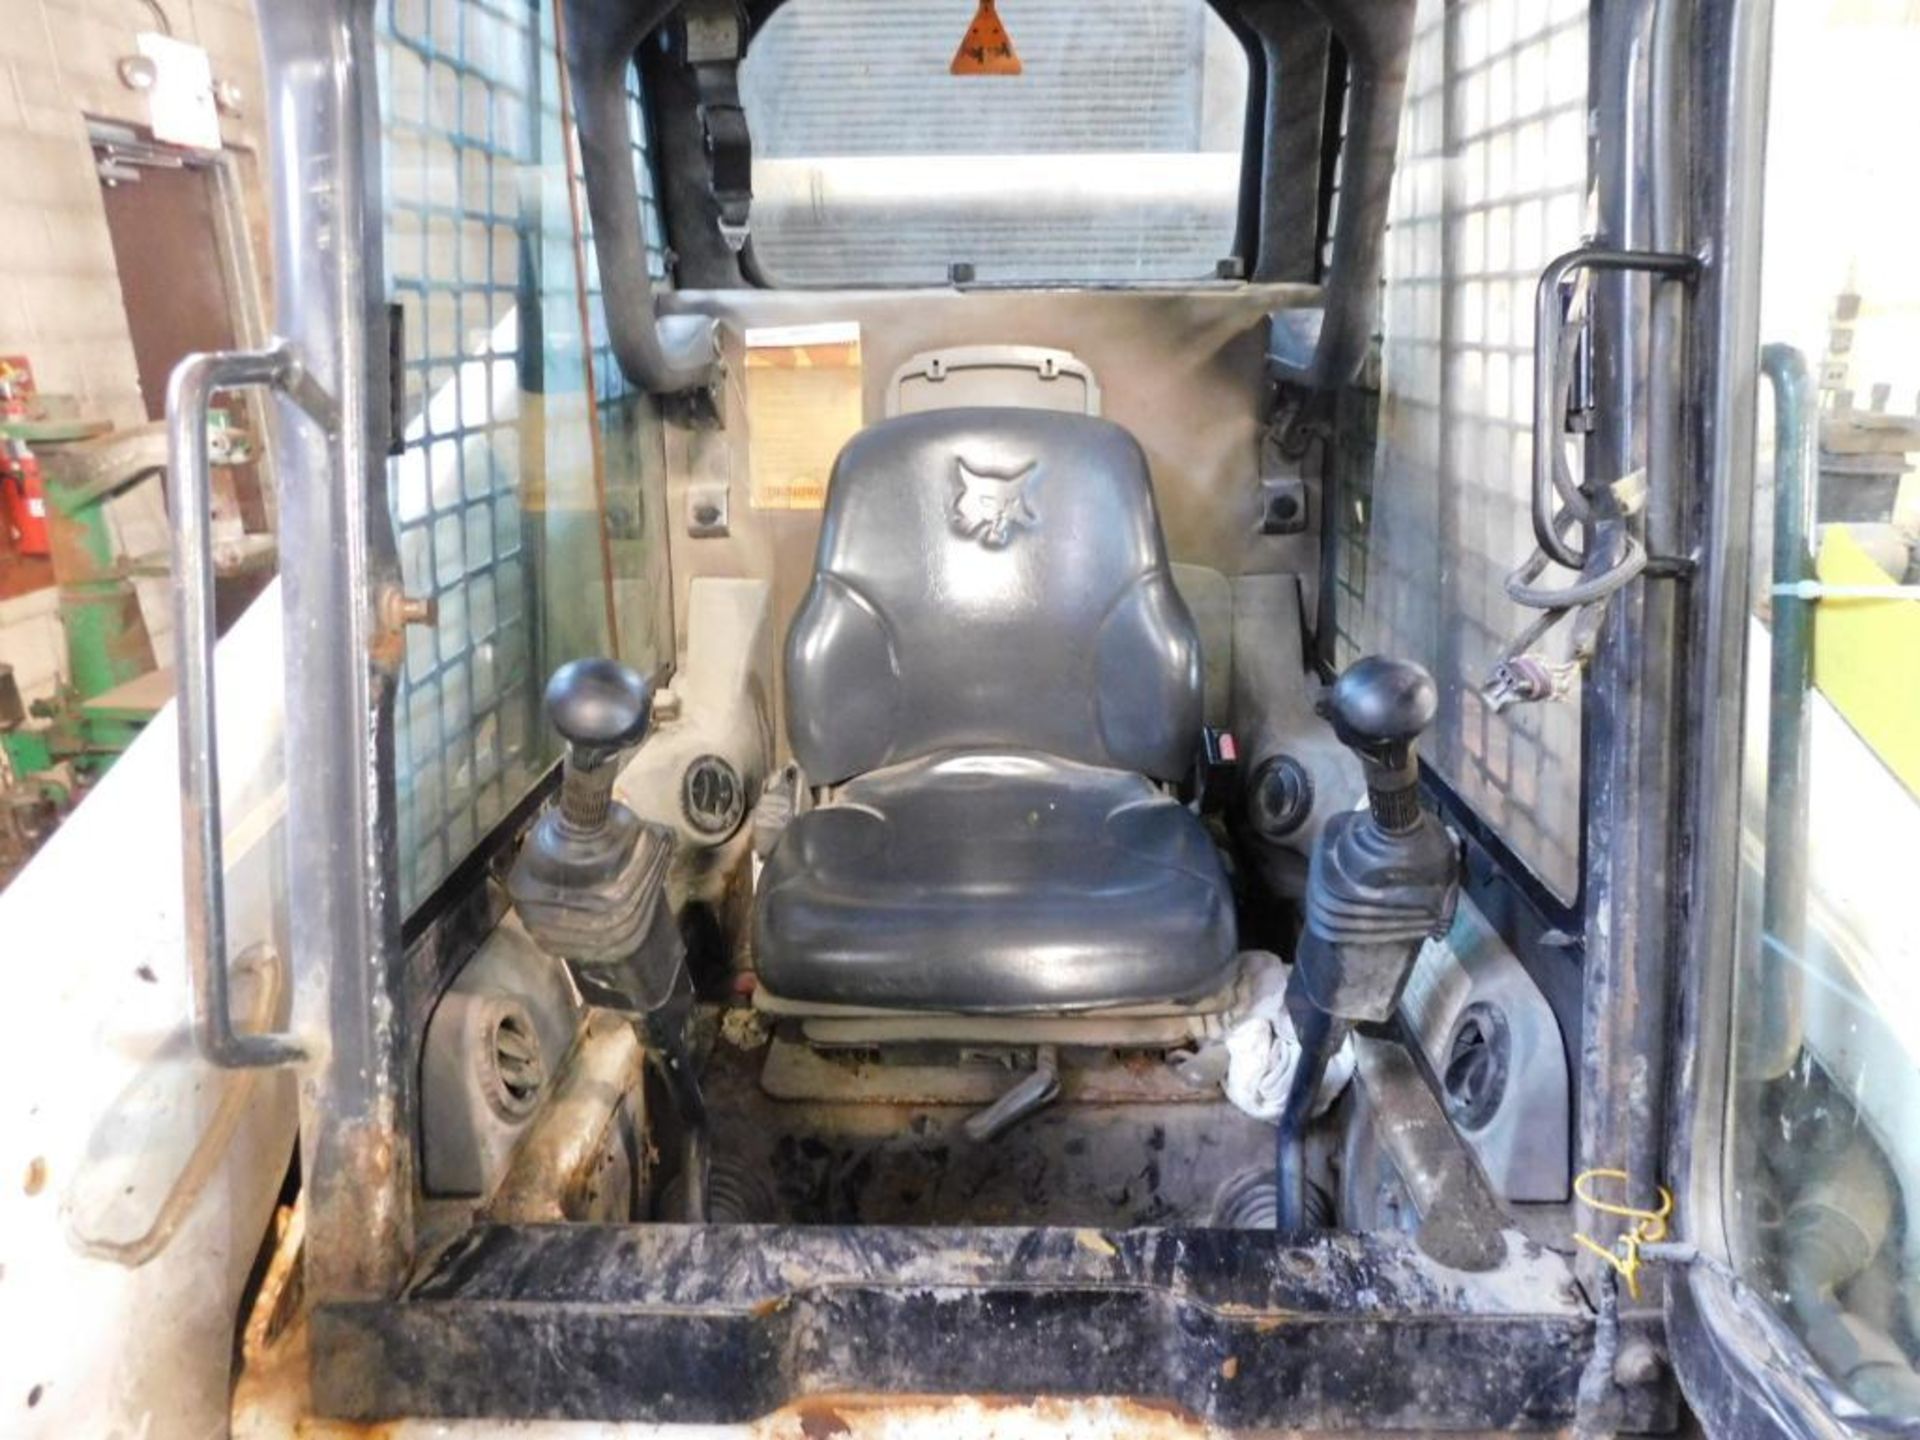 2002 Bobcat S300 Wheel Skid Steer, Enclosed Cab, AC/Heat, Foam Filled Tires, S/N 521513028, 2,461 In - Image 7 of 8